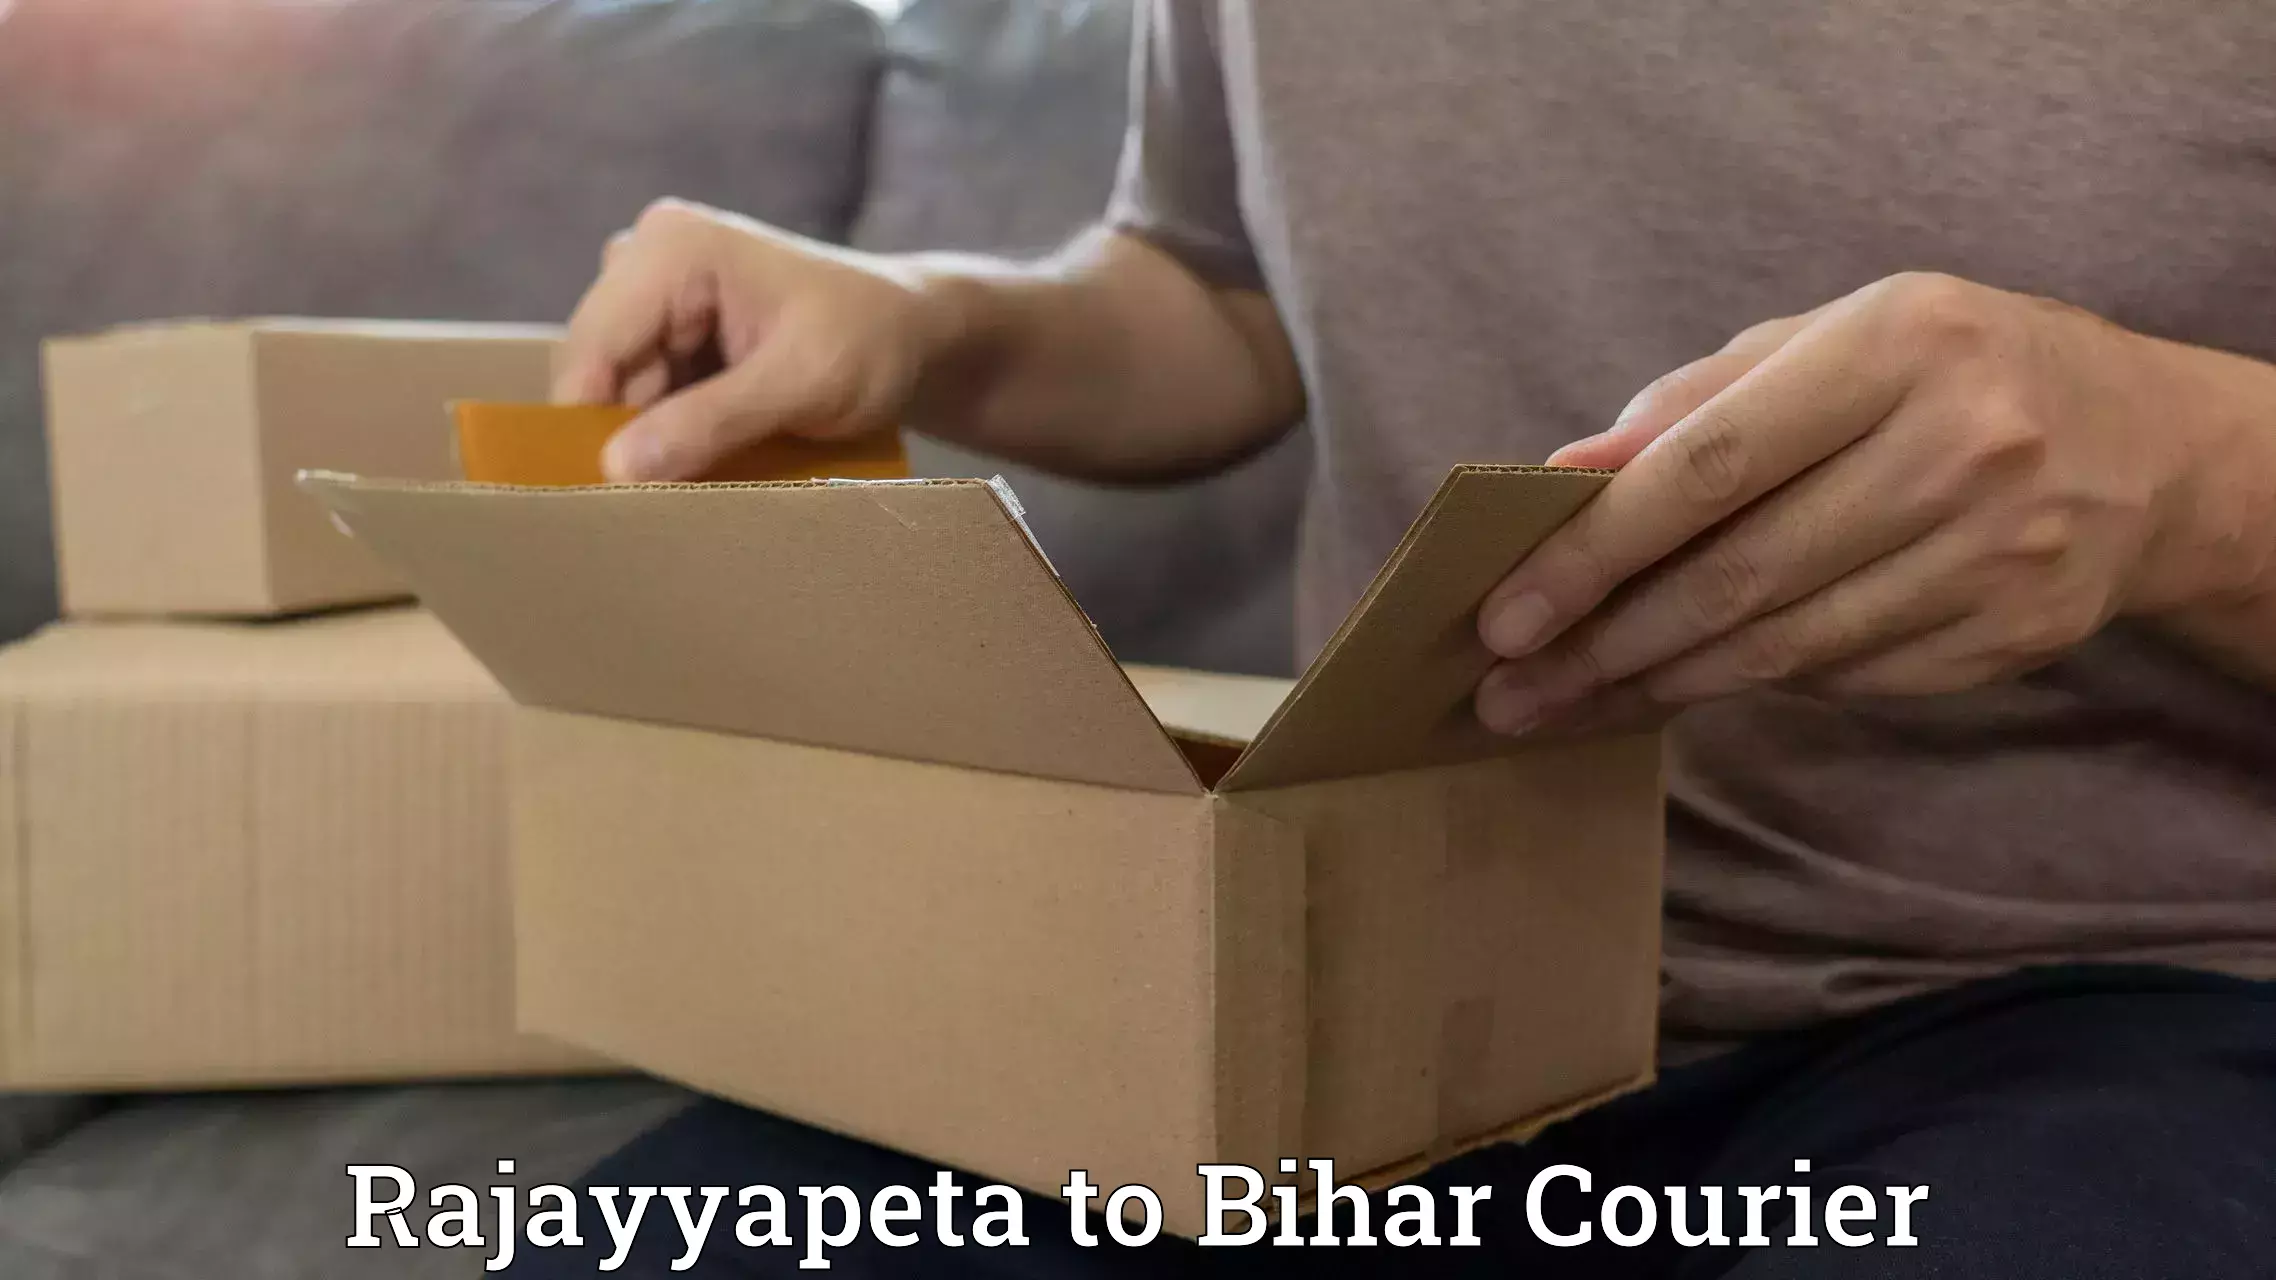 Courier tracking online in Rajayyapeta to Dighwara